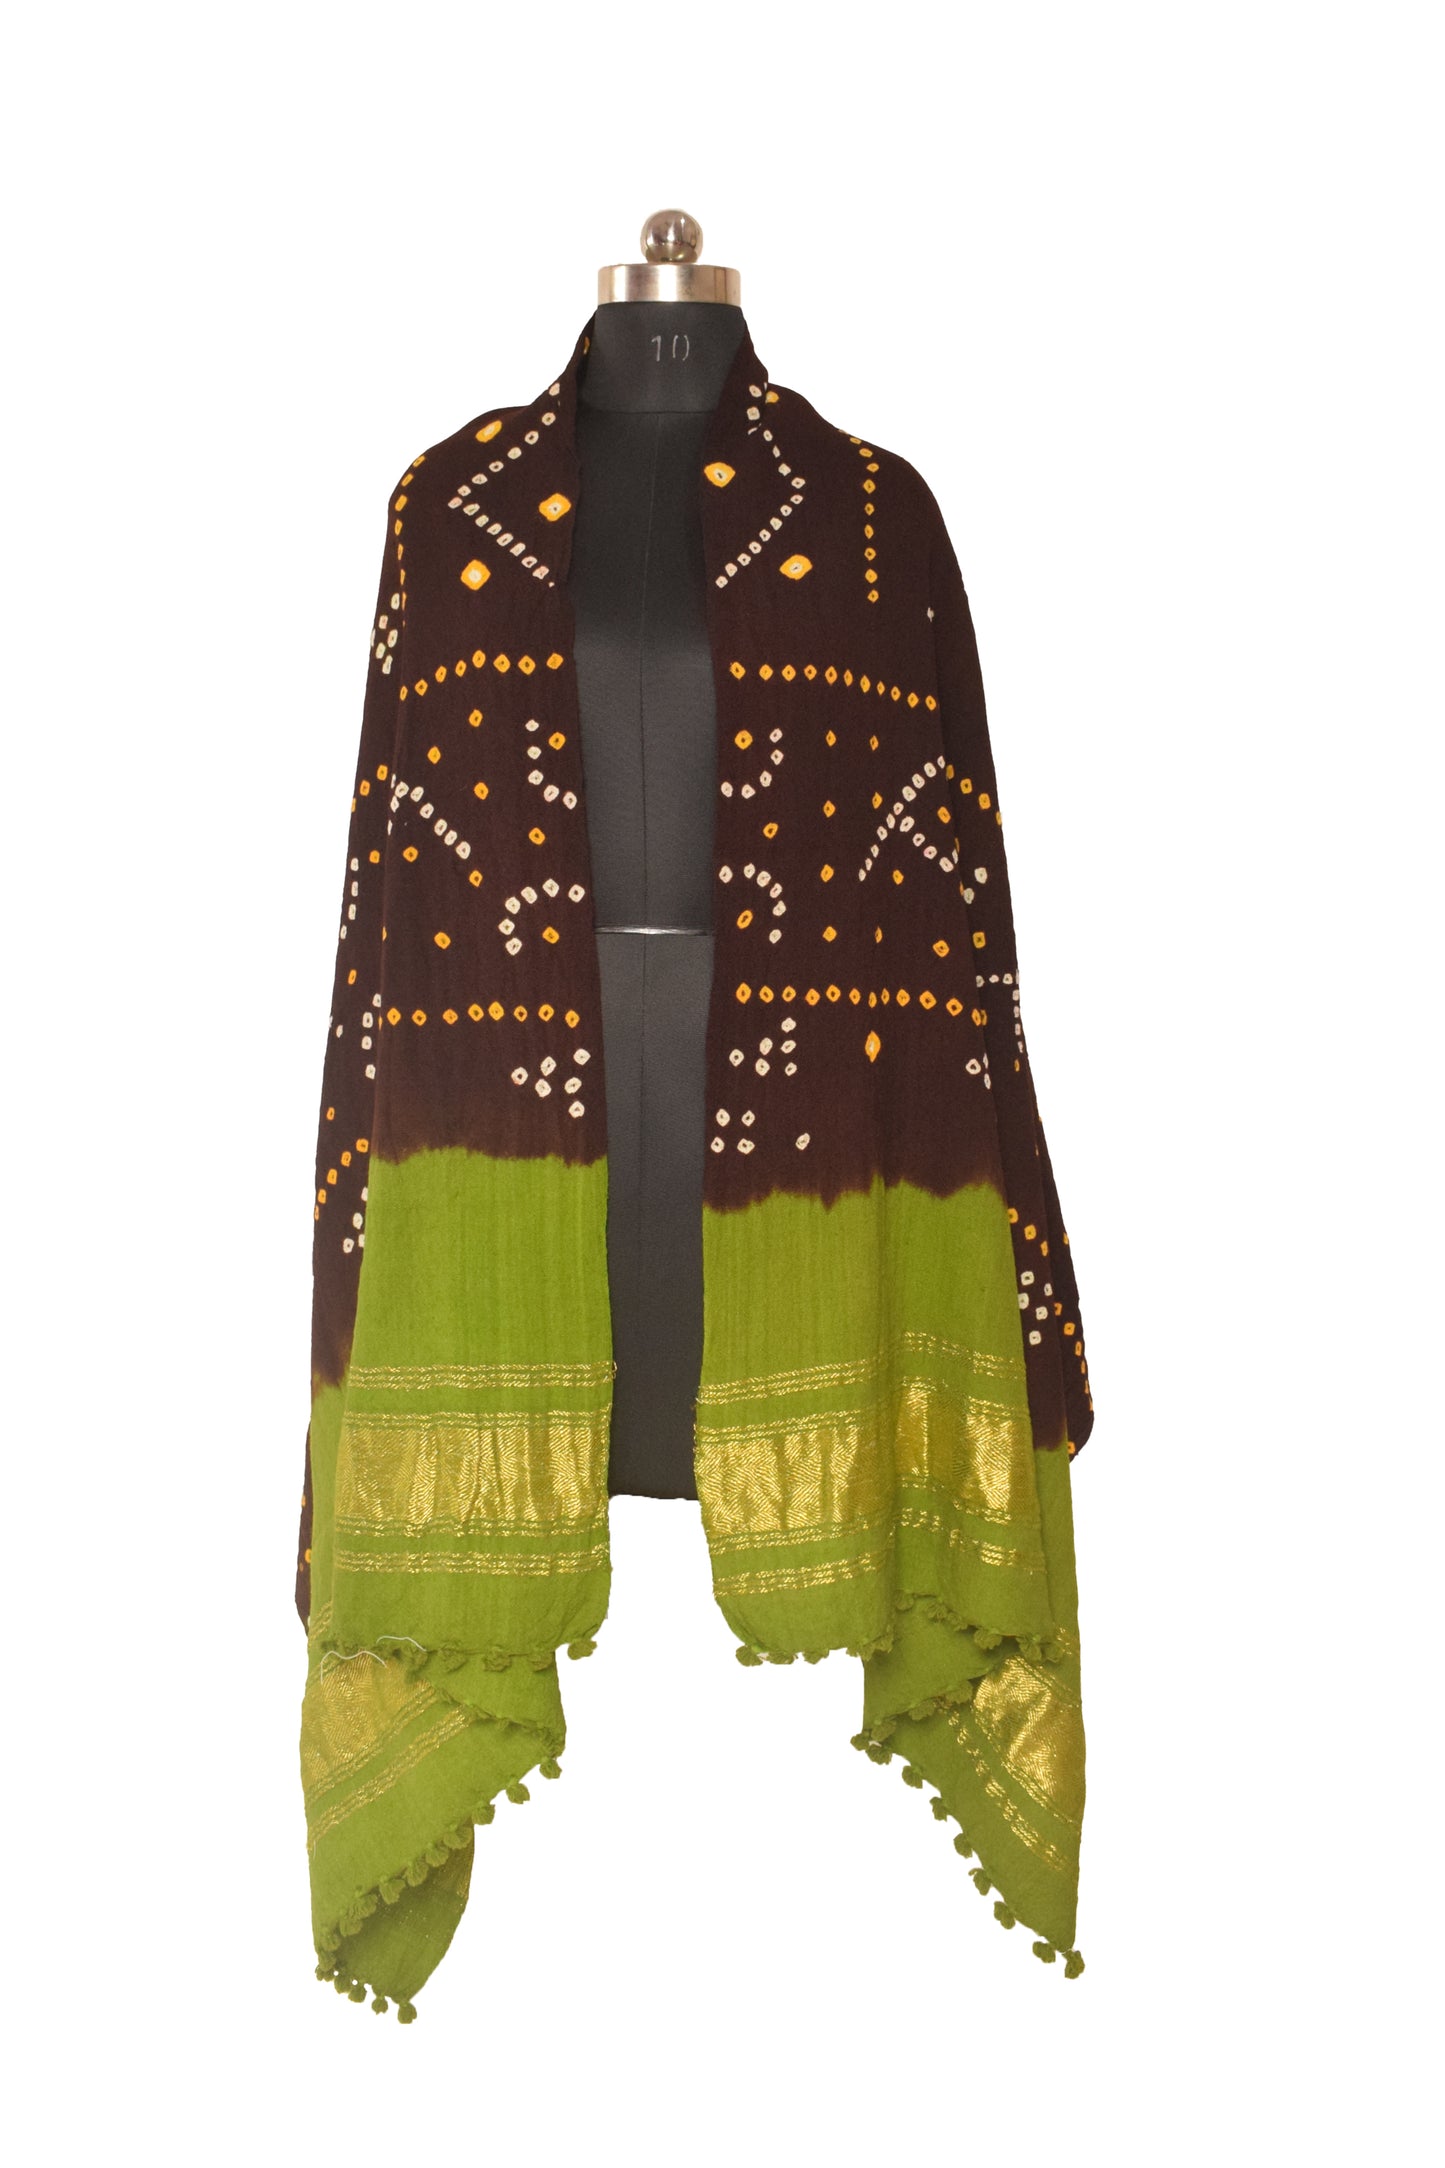 Bandhej ( Tie-Dye) Wool Shawl  with Golden Border & Tassels  - 2.1 Mtr Length    -  SKU : DB27B01A